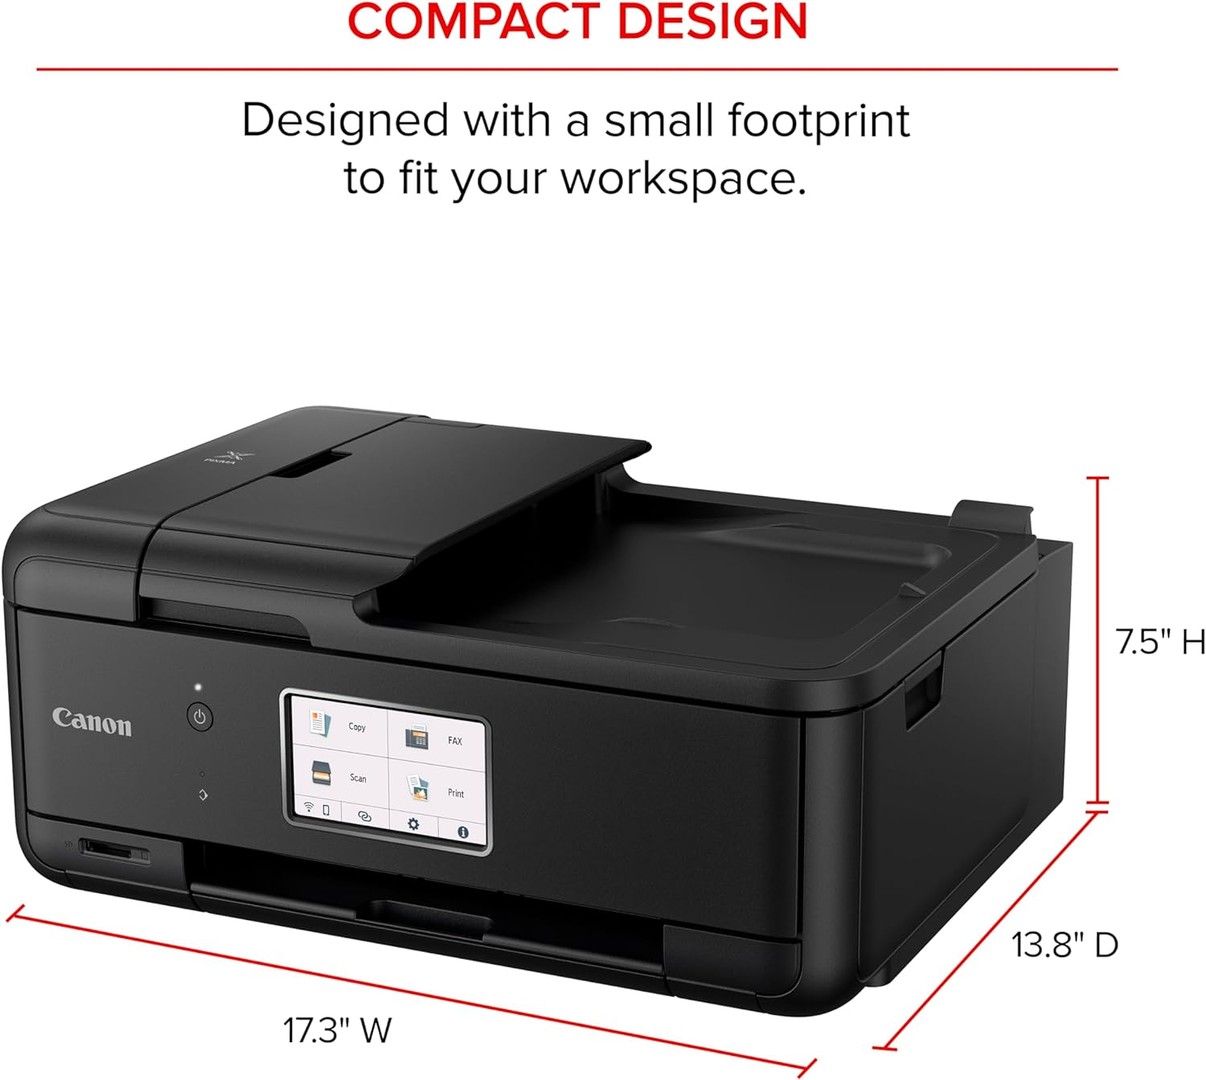 impresoras y scanners - Impresora Canon PIXMA TR8620a Multifuncional, fax, alimentador automático ADF 7